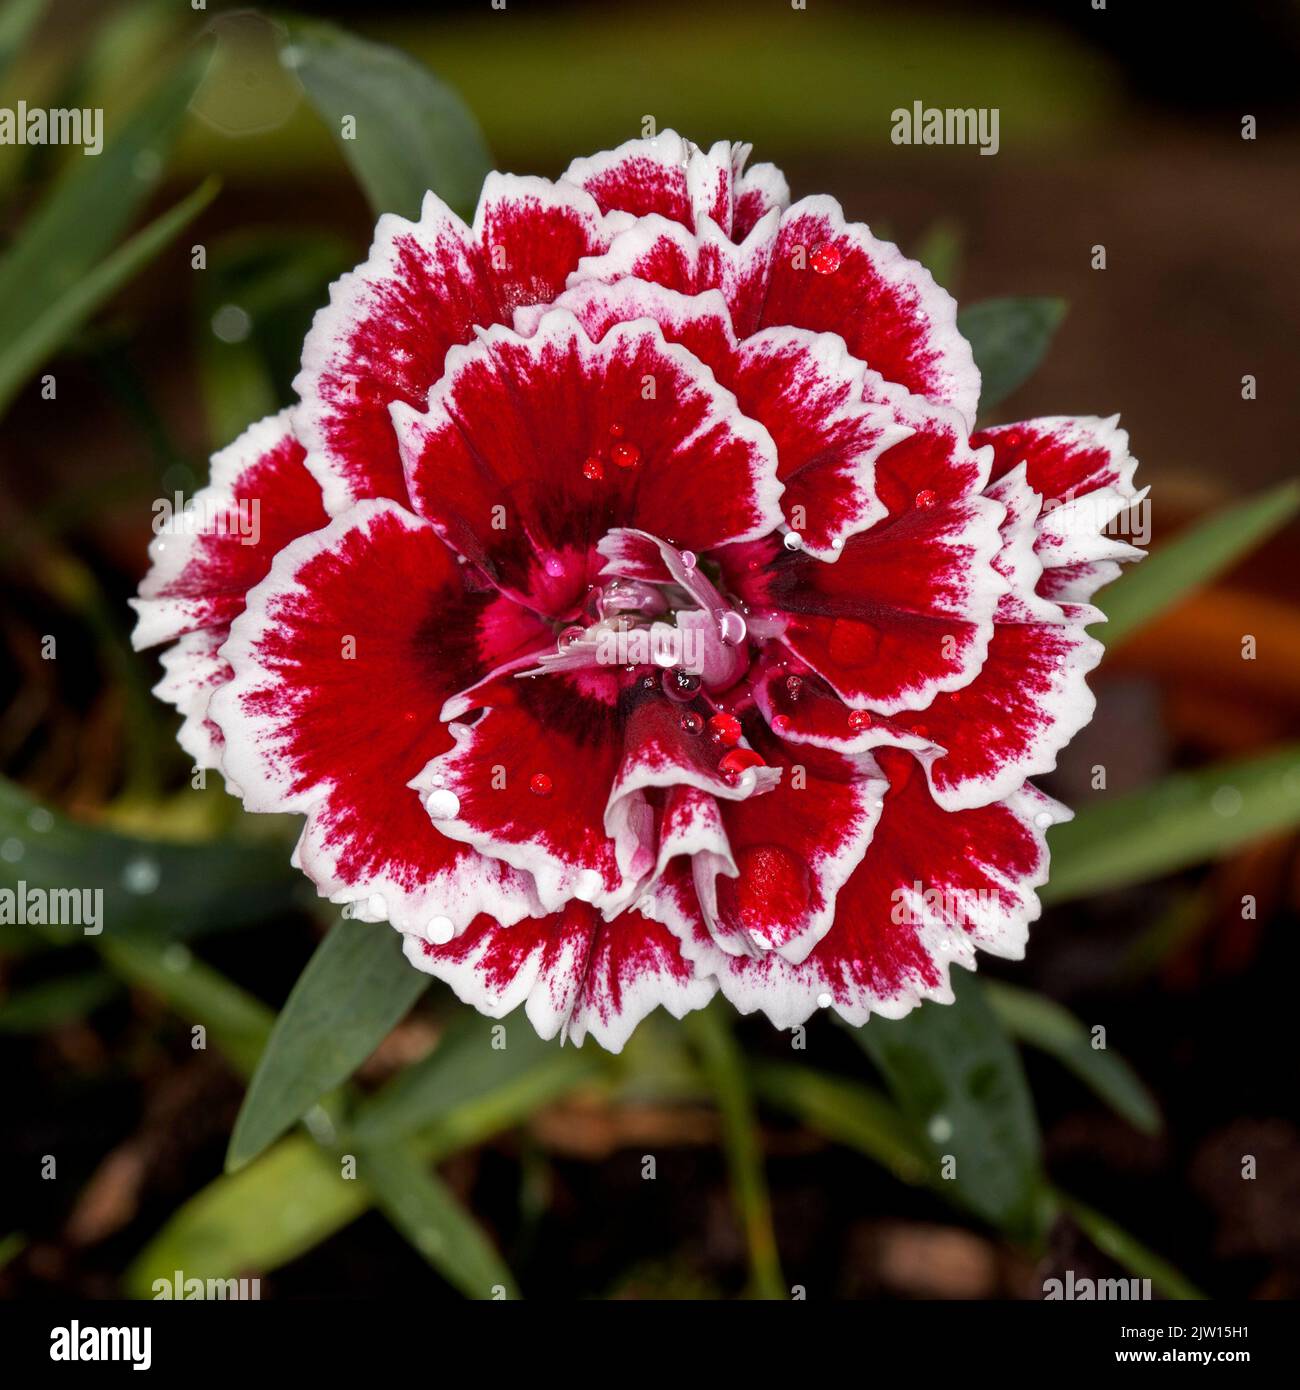 Bel fiore profumato rosso ricco di Dianthus con petali orlati di bianco su fondo scuro di foglie, pianta da giardino perenne Foto Stock